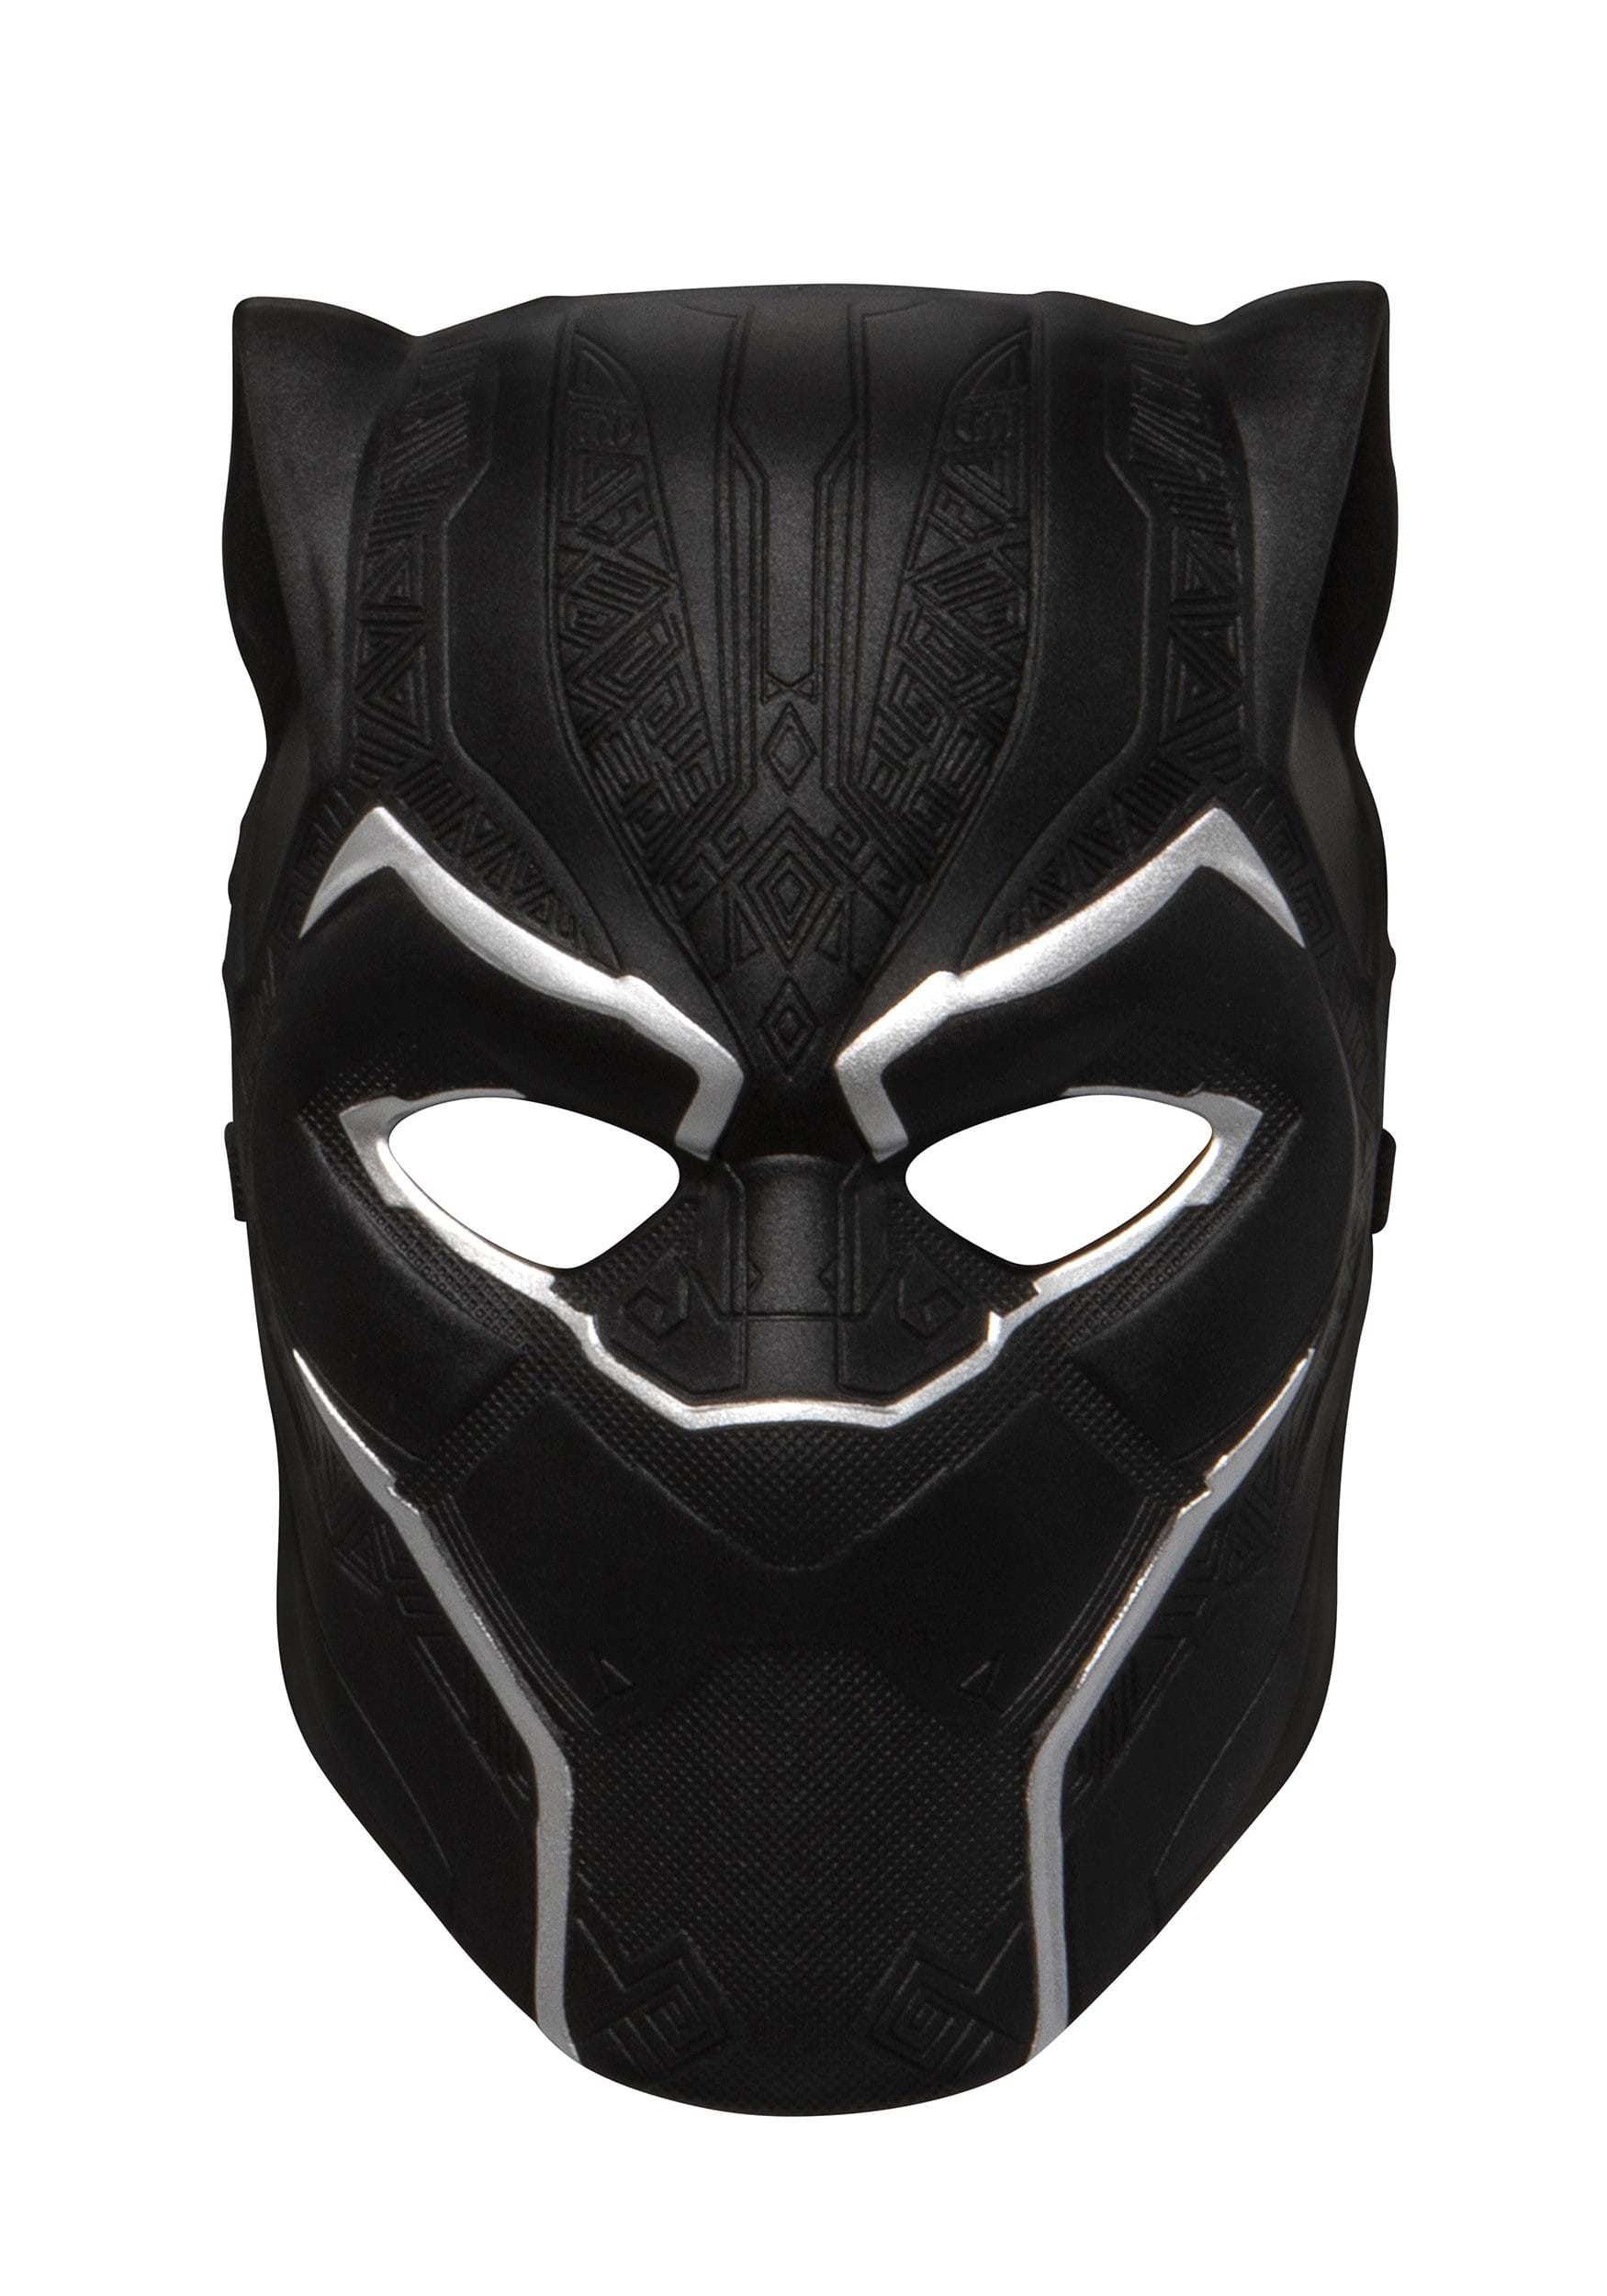 Adult Black Panther Half Mask , Marvel Superhero Masks